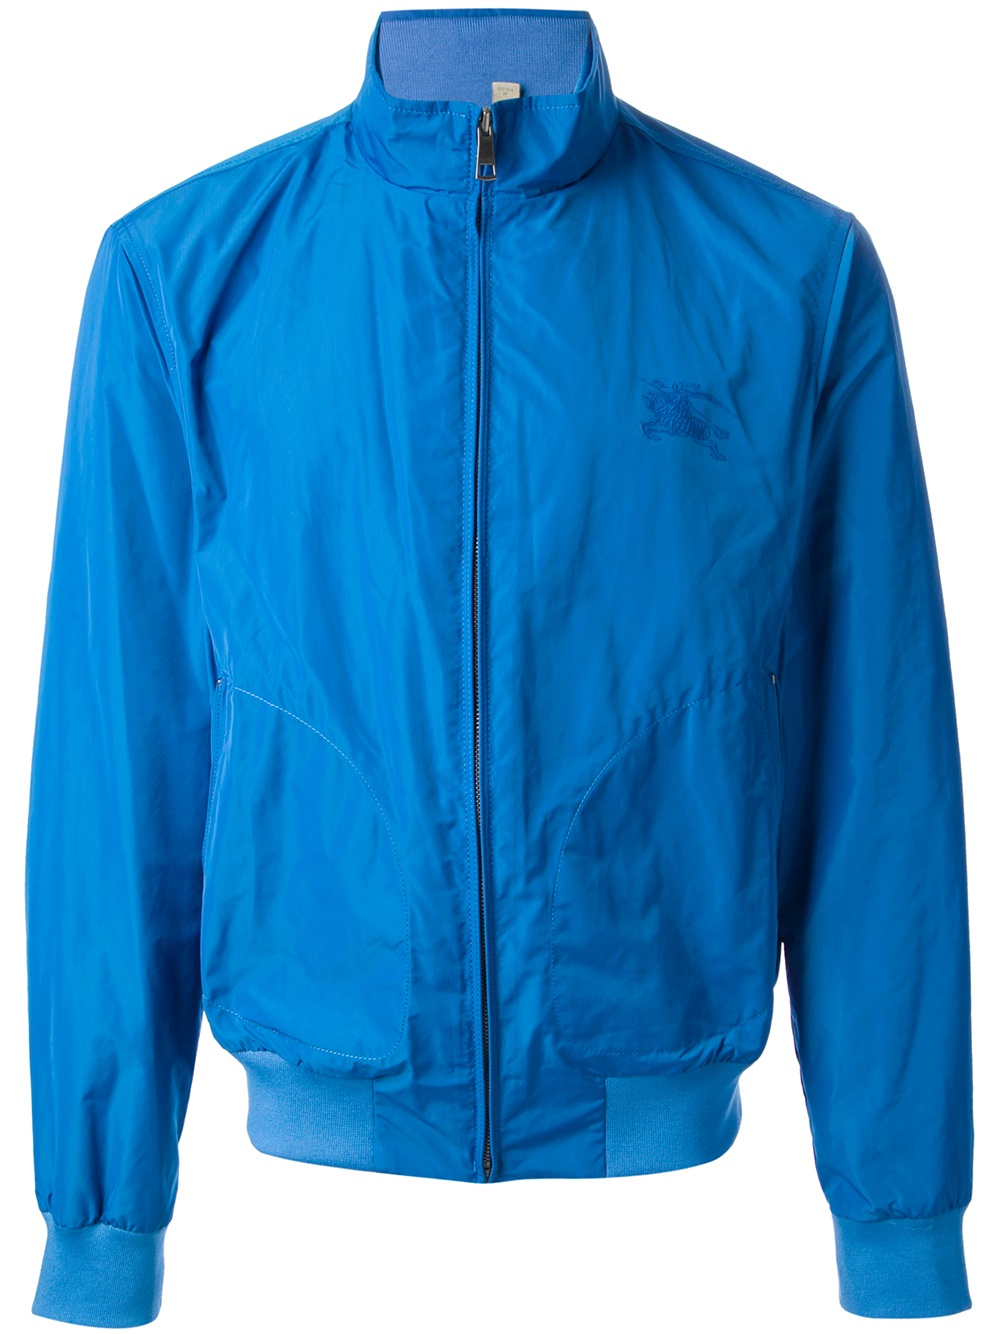 burberry harrington jacket blue